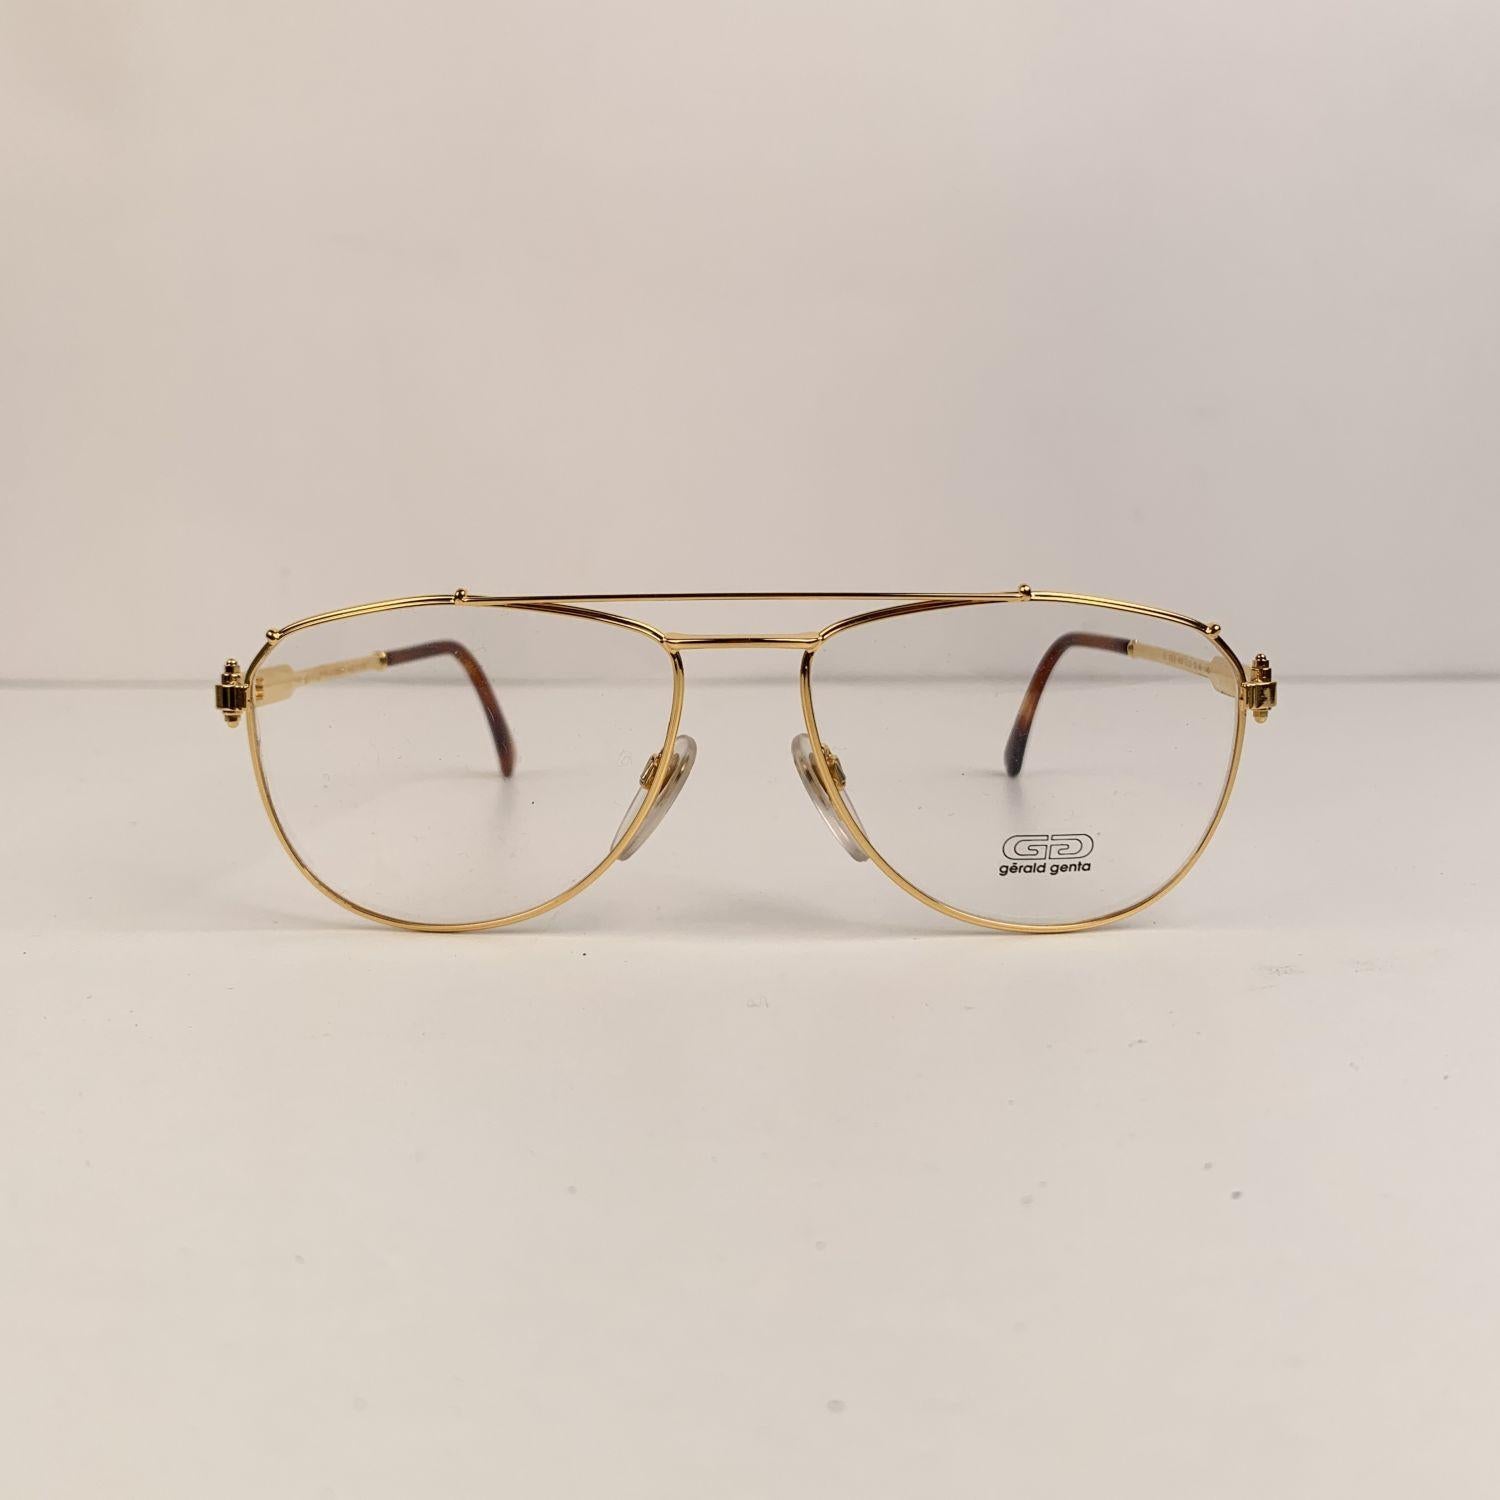 Gerald Genta Vintage Eyeglasses Gold and Gold Plated 03 AU 59-17 145mm 1